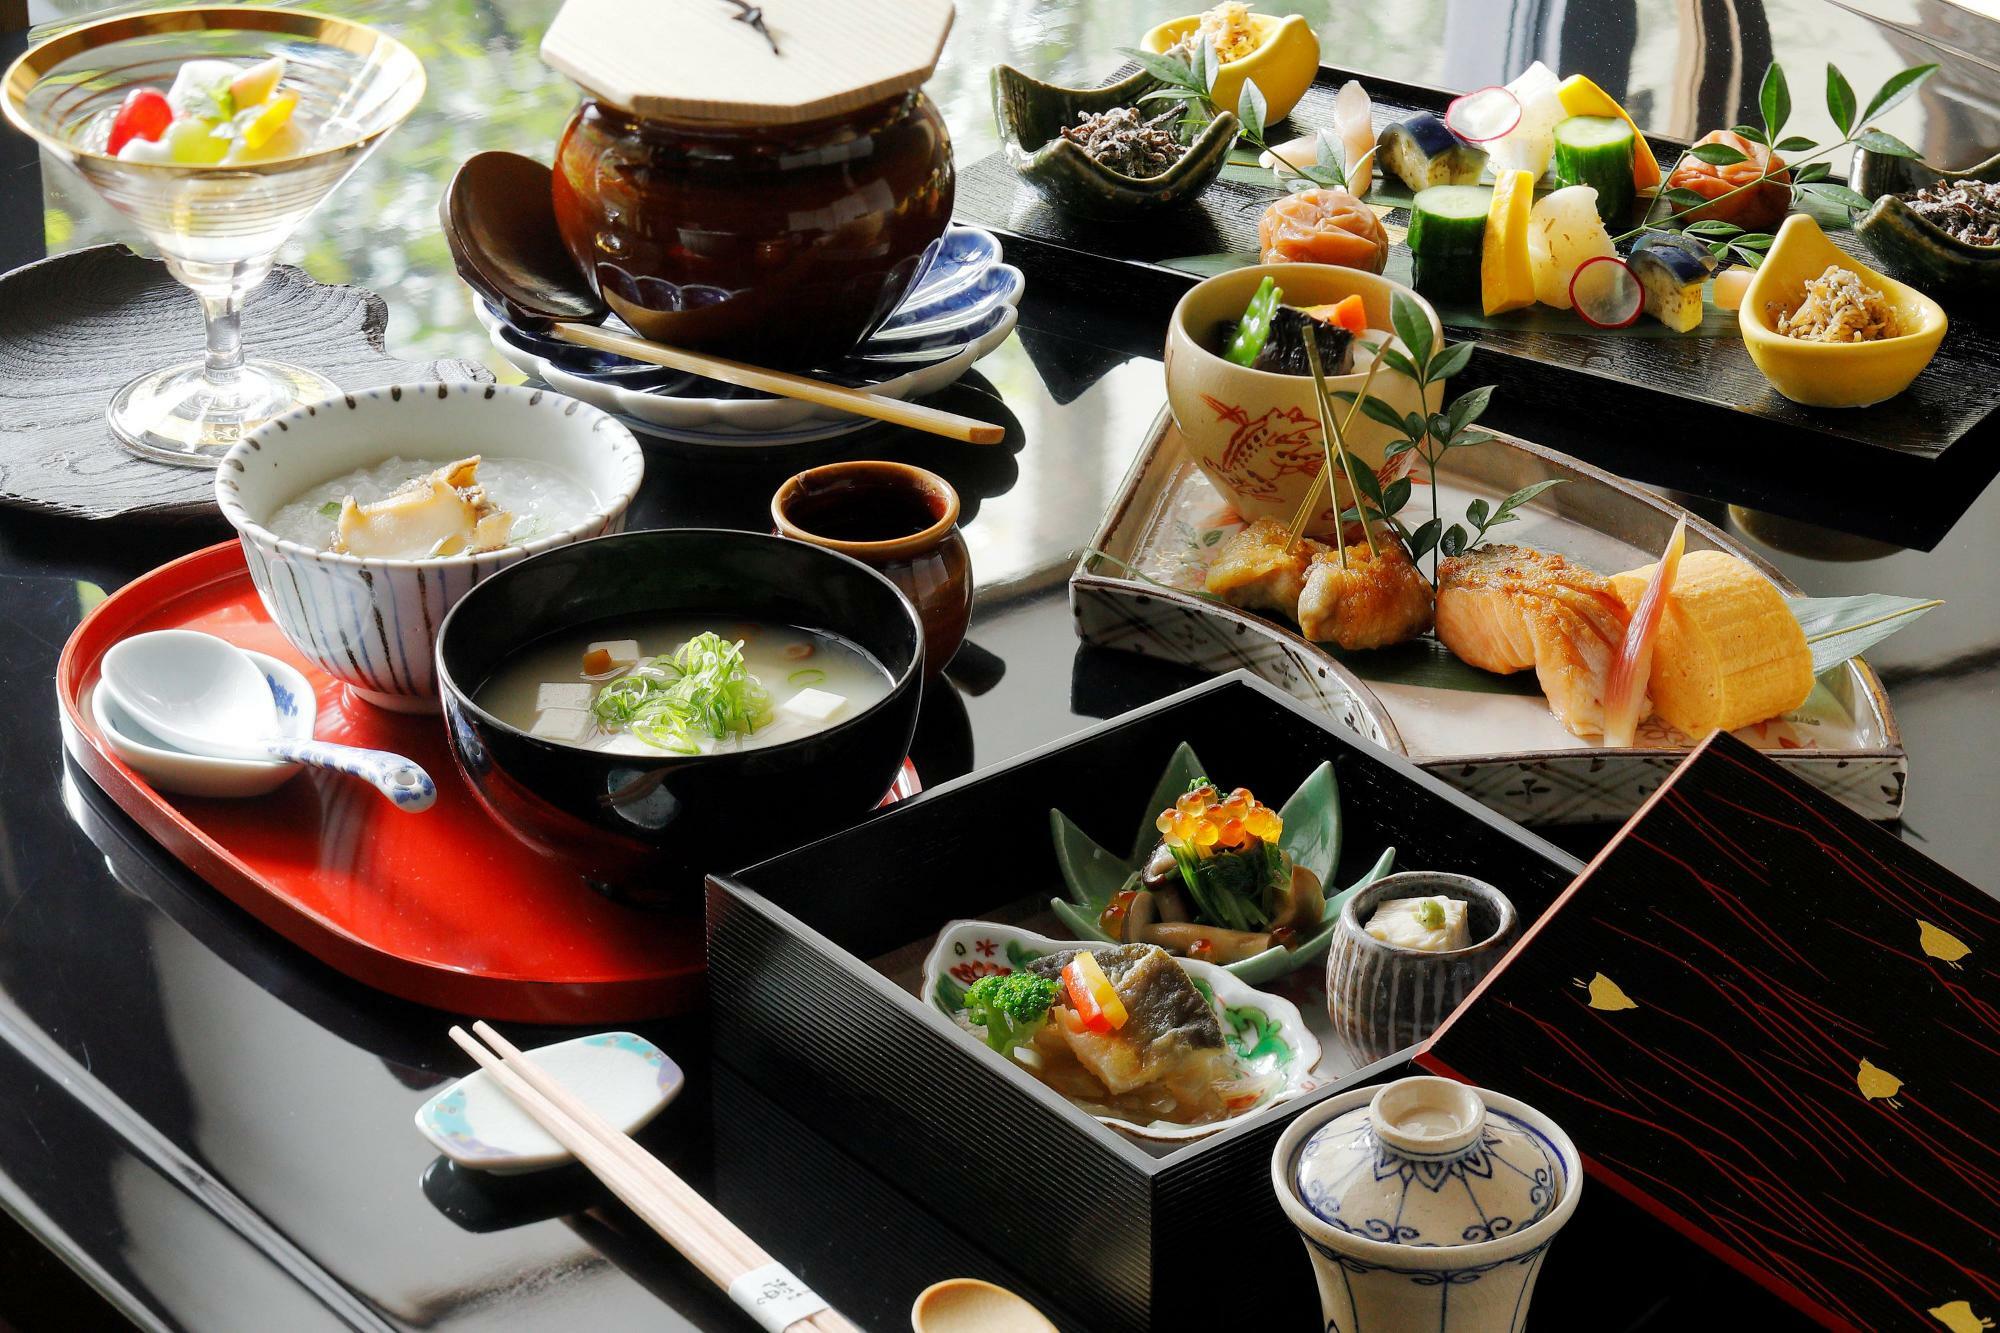 地元の食材を和洋にアレンジした特別朝食「京の朝ごはん」　京都ブライトンホテル提供